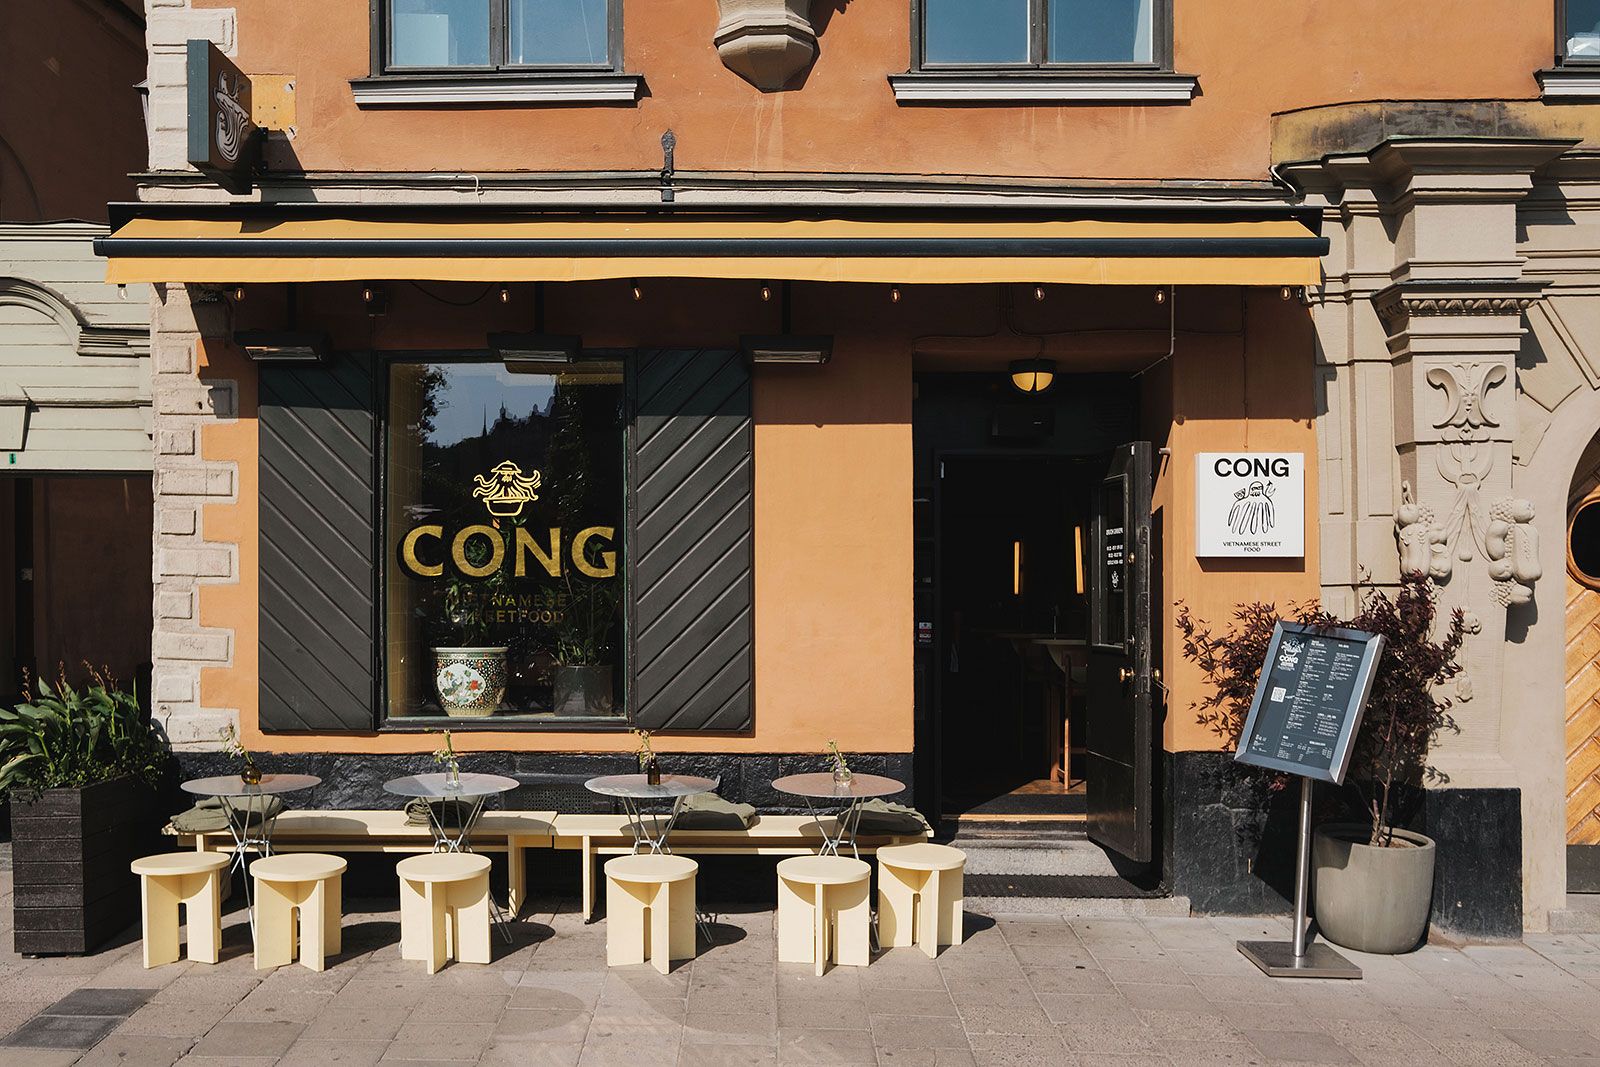 Cong – Första dejten